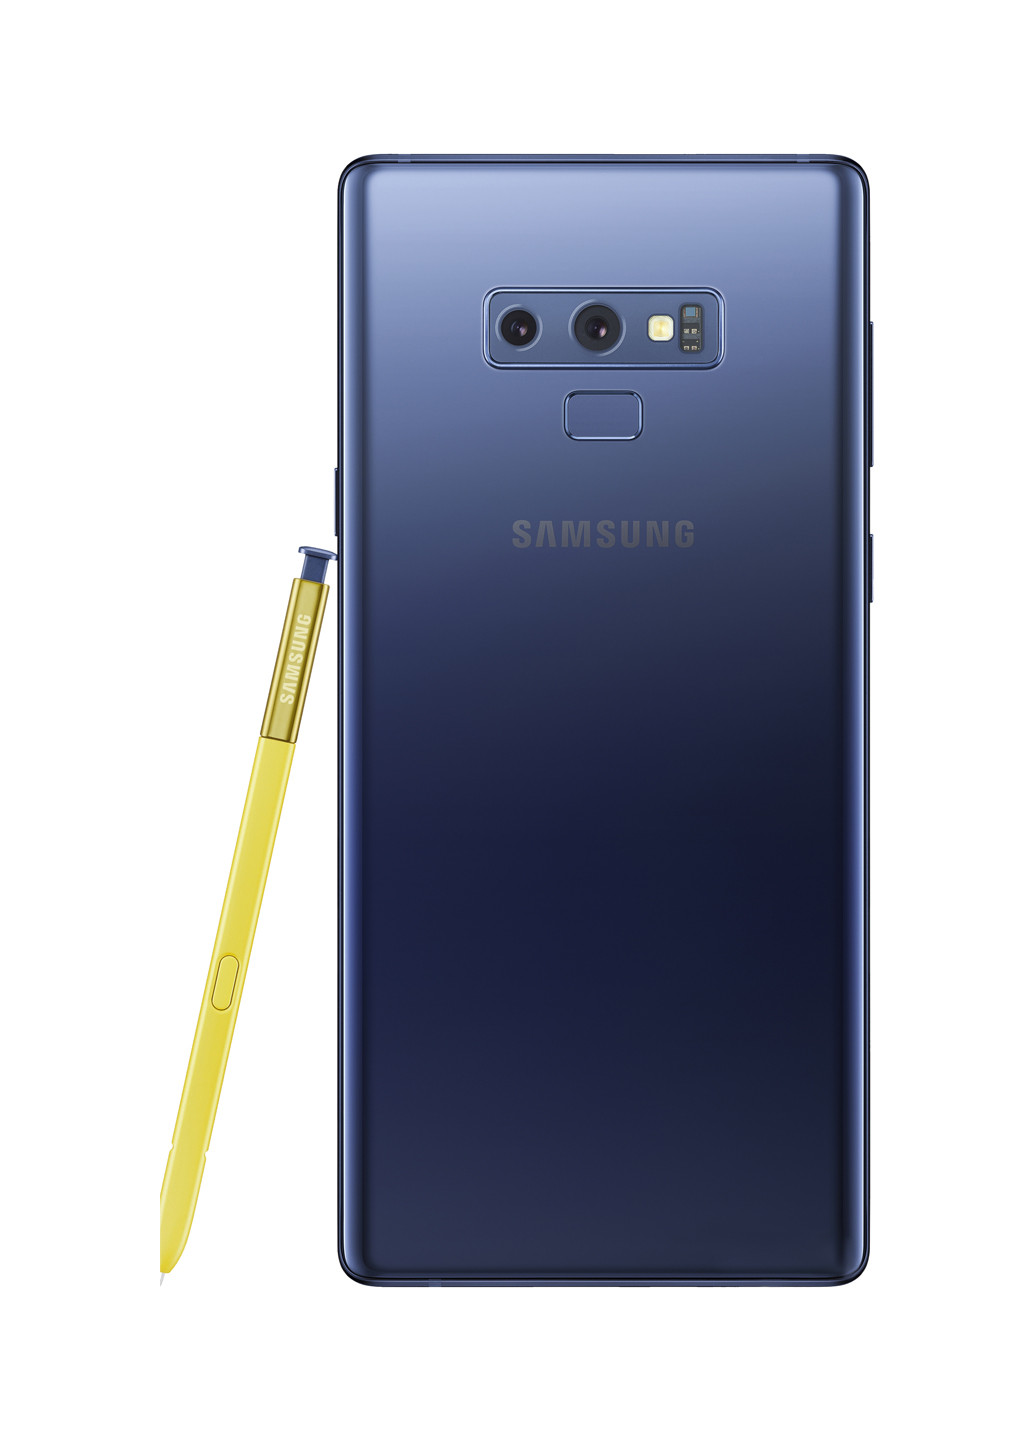 Смартфон Galaxy Note 9 6 / 128Gb Blue (SM-N960FZBDSEK) Samsung galaxy note 9 6/128gb blue (sm-n960fzbdsek) (130349385)